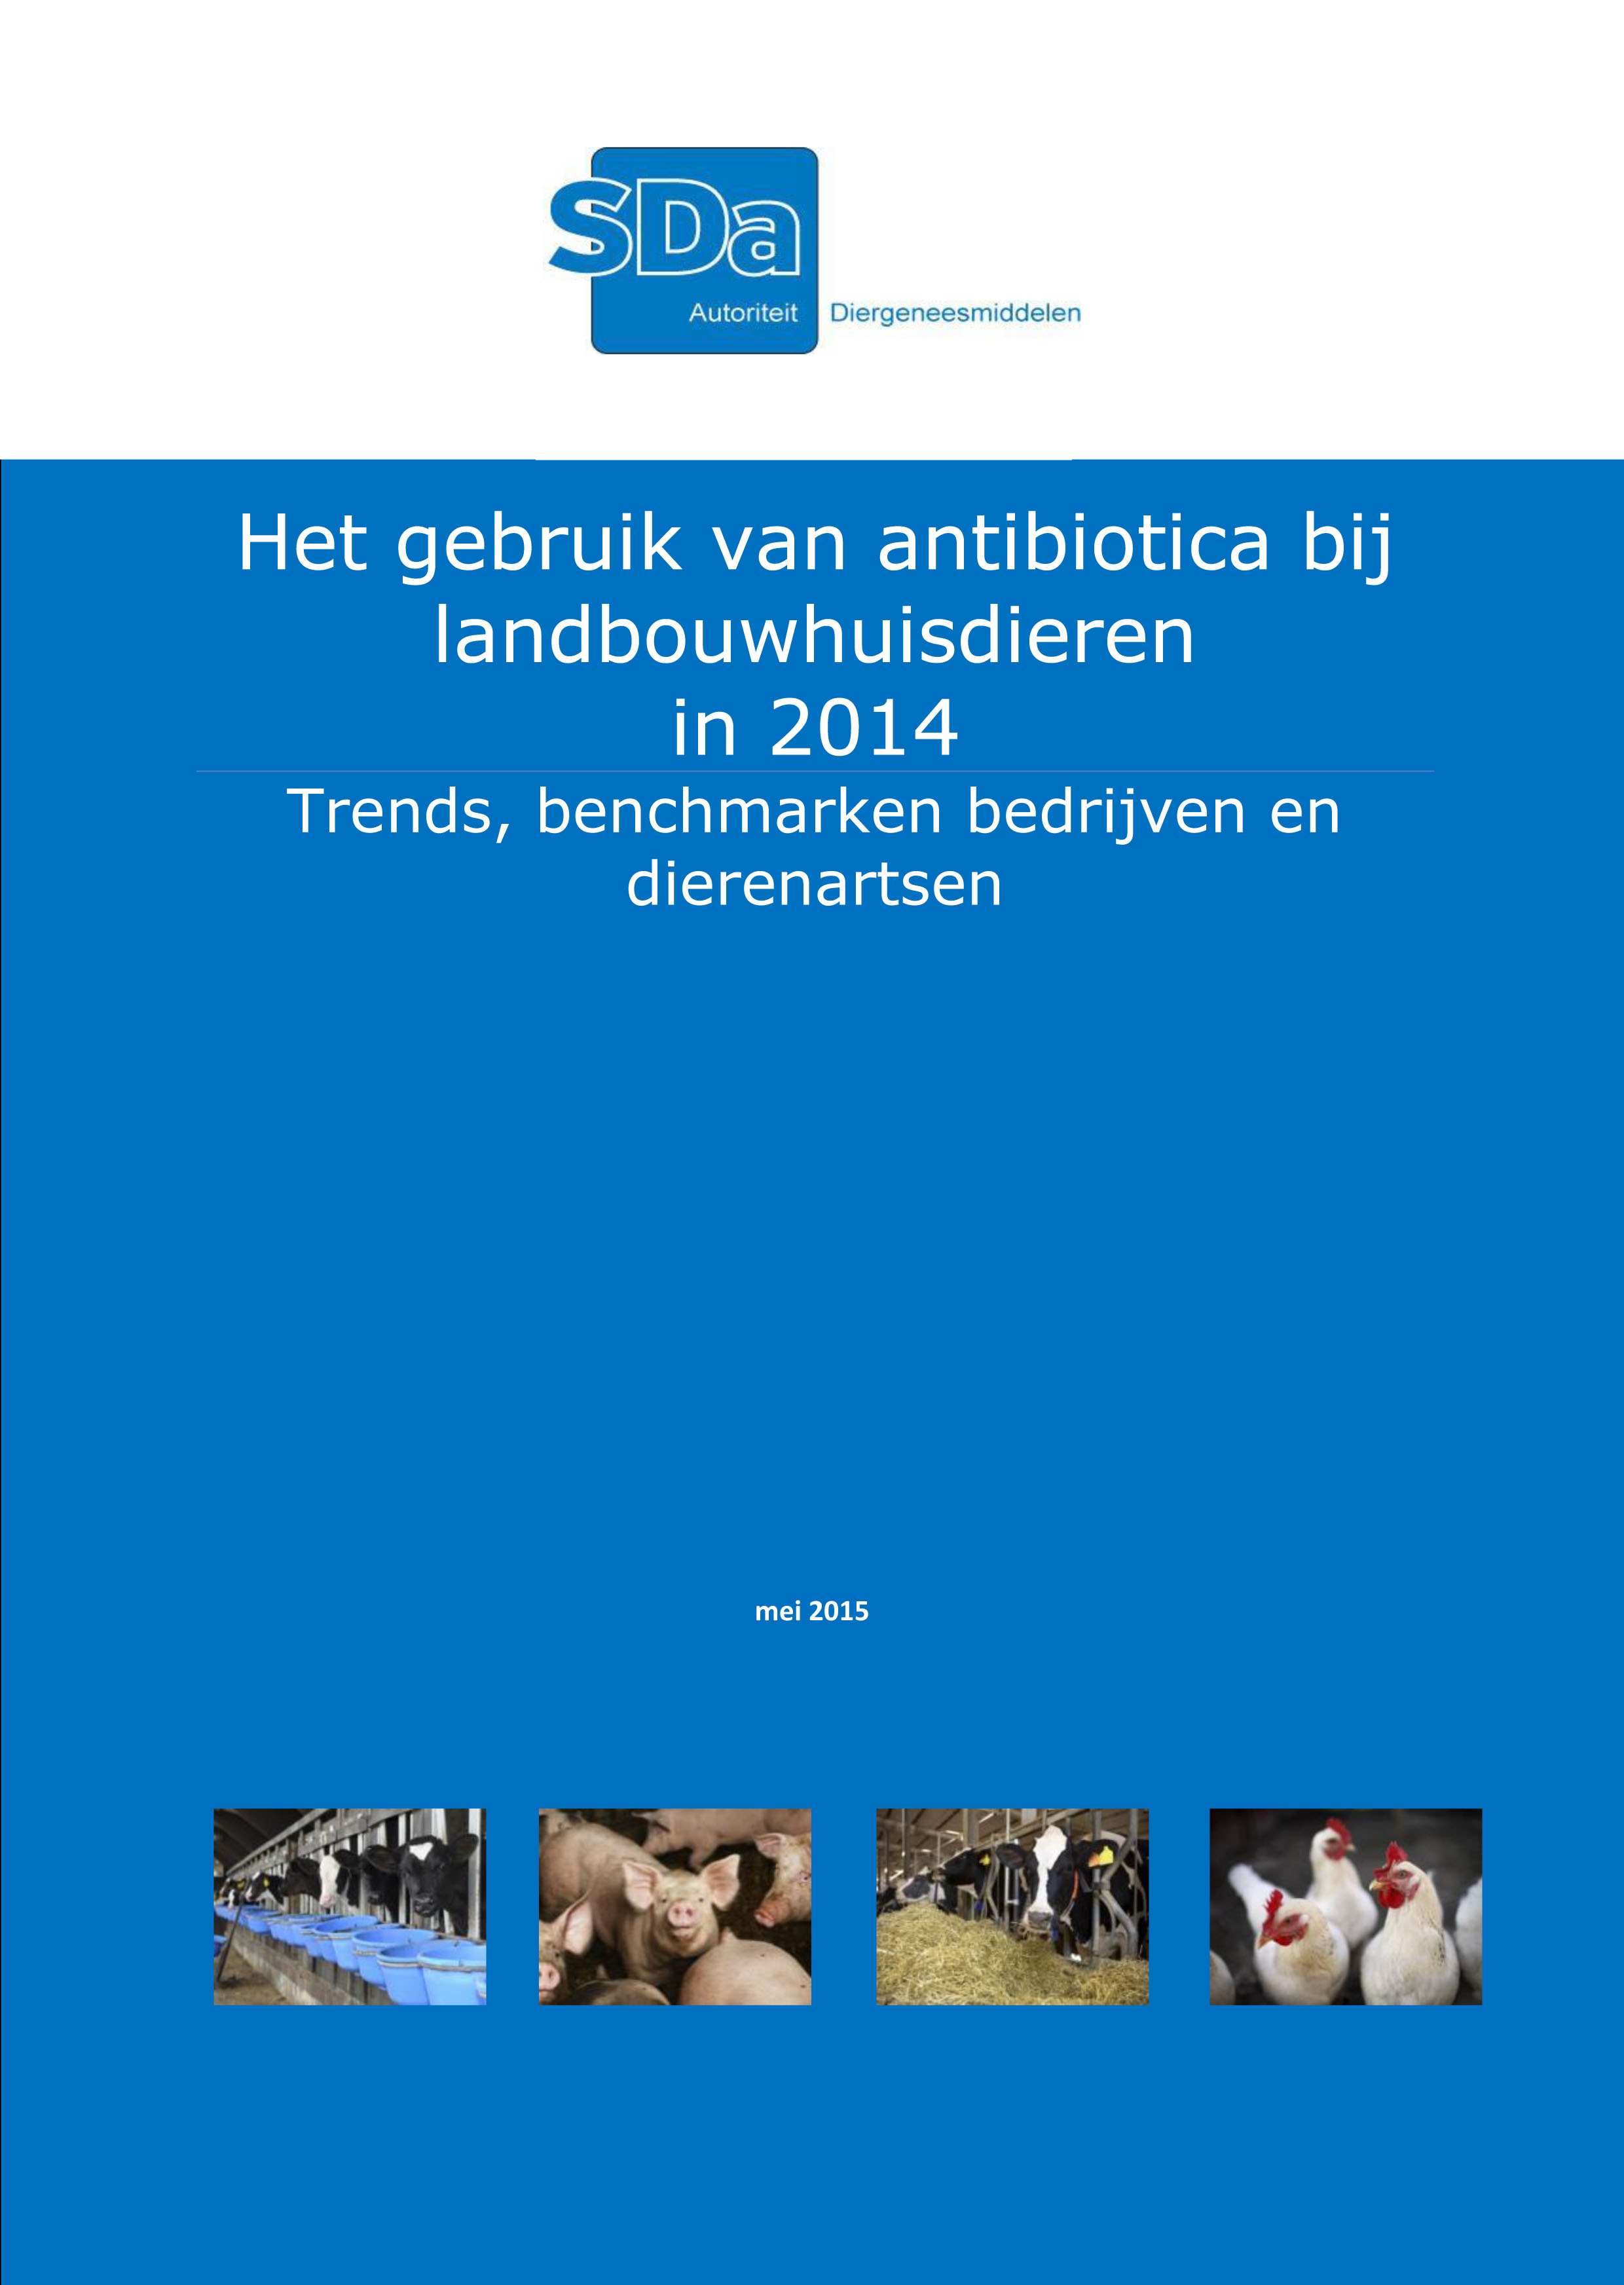 SDa-rapport 'antibioticumgebruik in 2014'